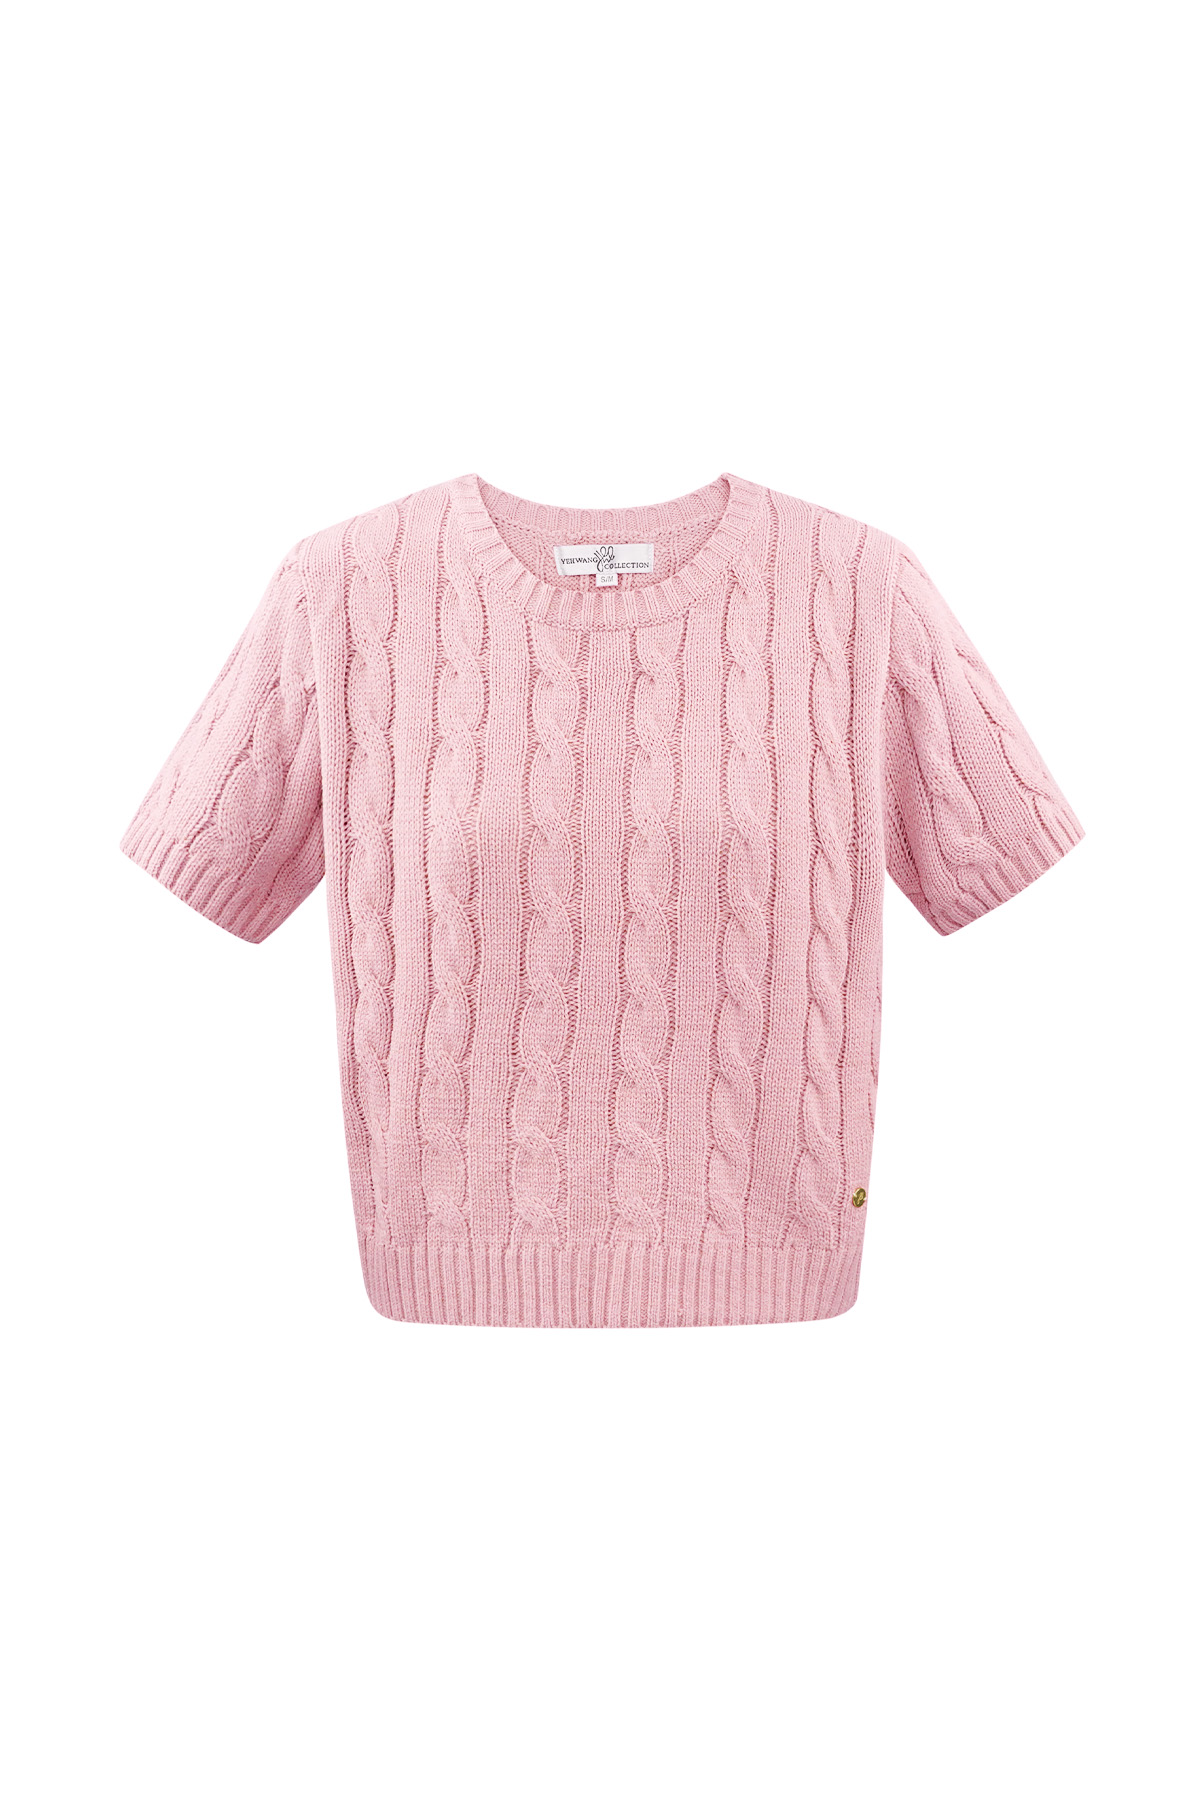 Jersey de punto clásico con trenzas y manga corta pequeño/mediano – rosa